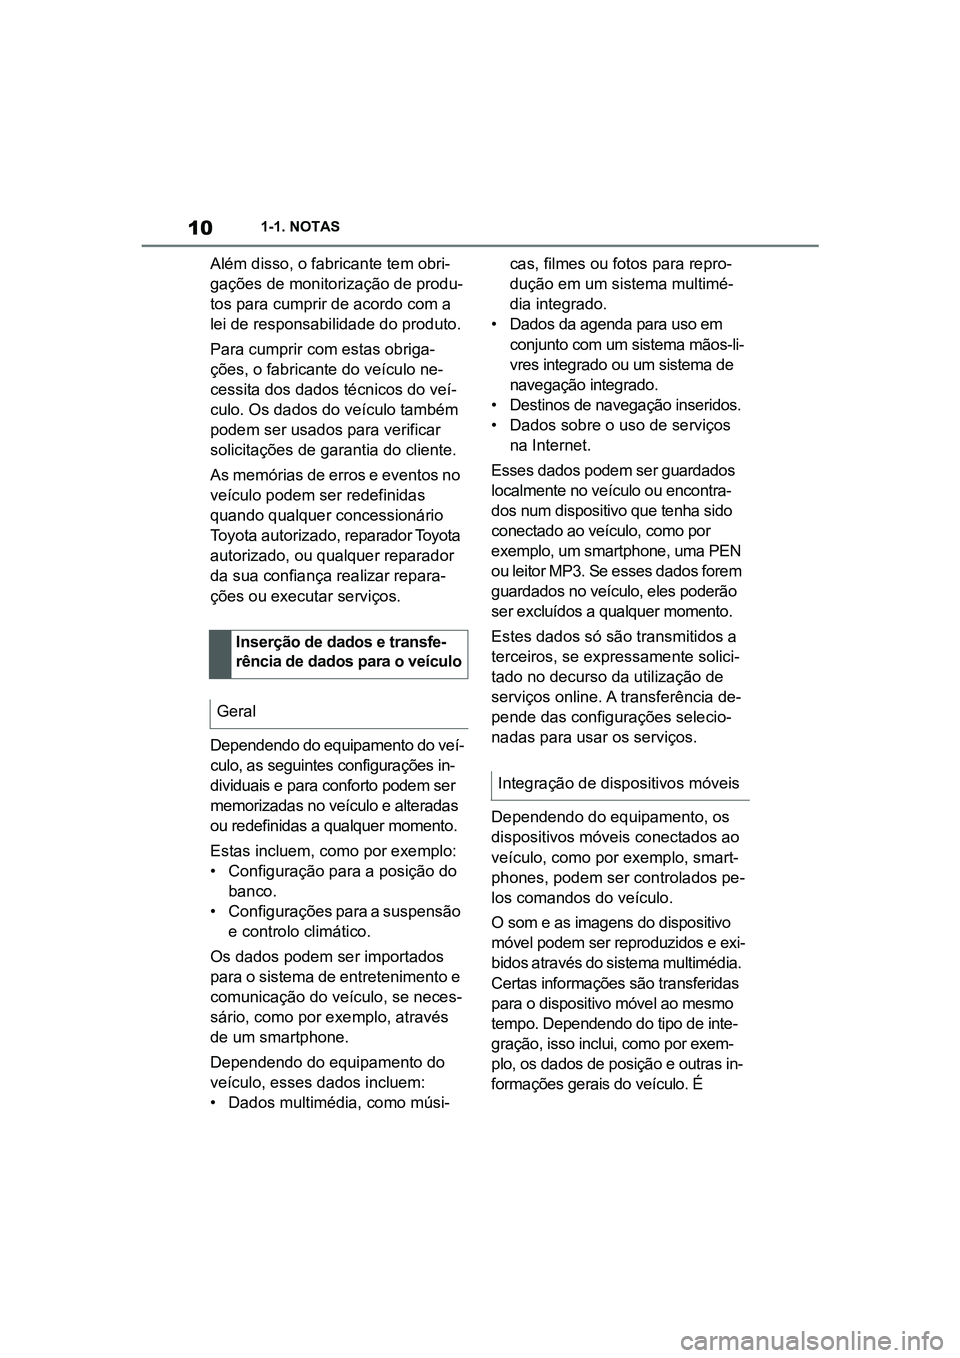 TOYOTA SUPRA 2019  Manual de utilização (in Portuguese) 10
Supra Owner's Manual1-1. NOTAS
Além disso, o fabricante tem obri
-
gações de monitorização de produ -
tos para cumprir de acordo com a 
le
 i de responsabilidade do produto.
Para cumprir c